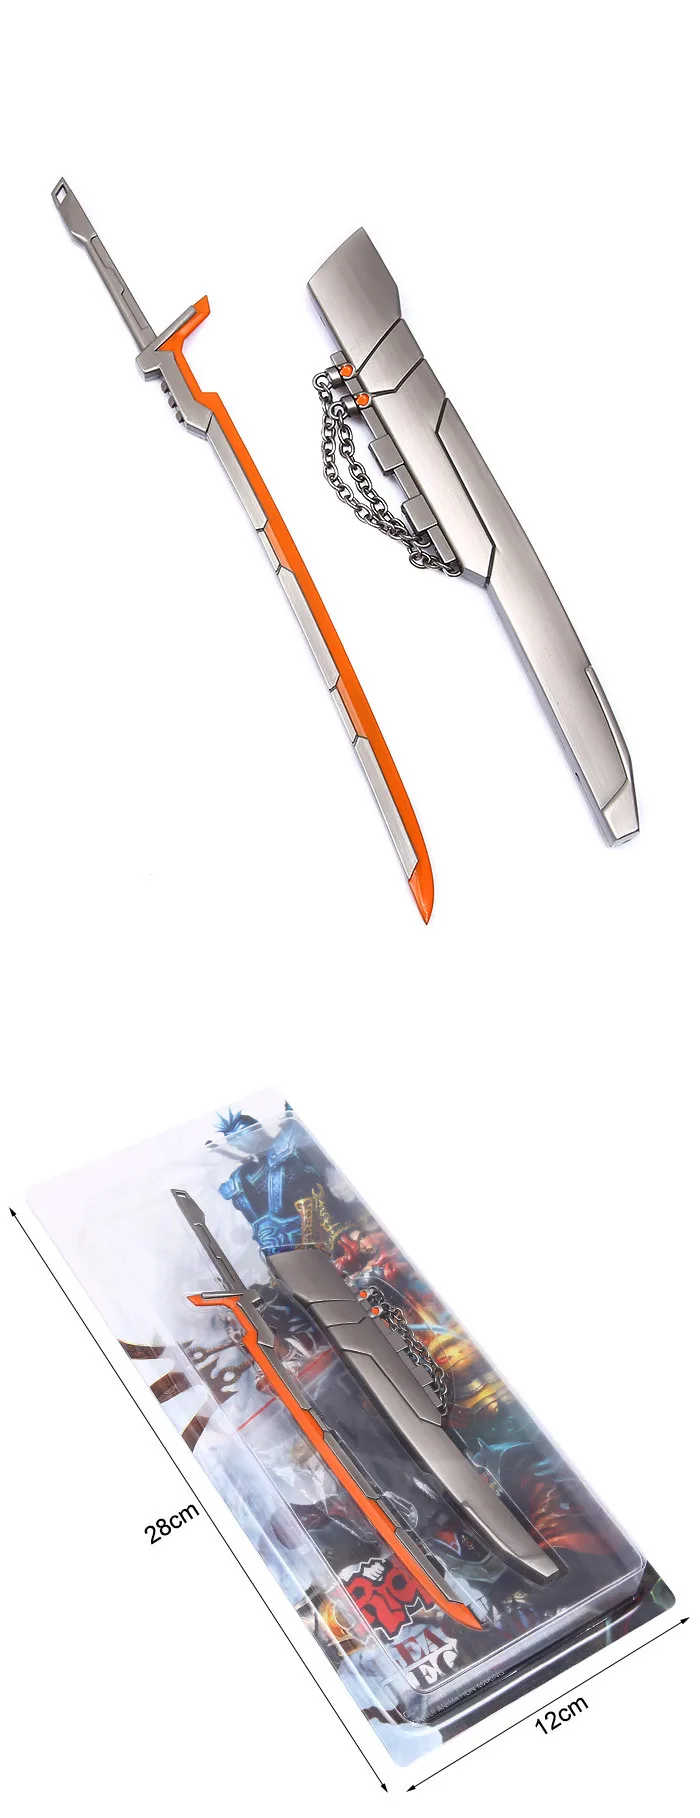 Alliance периферическое оружие Модель Yasso сплав оснащен бесконечным мечом священный источник программы игрушечное оружие